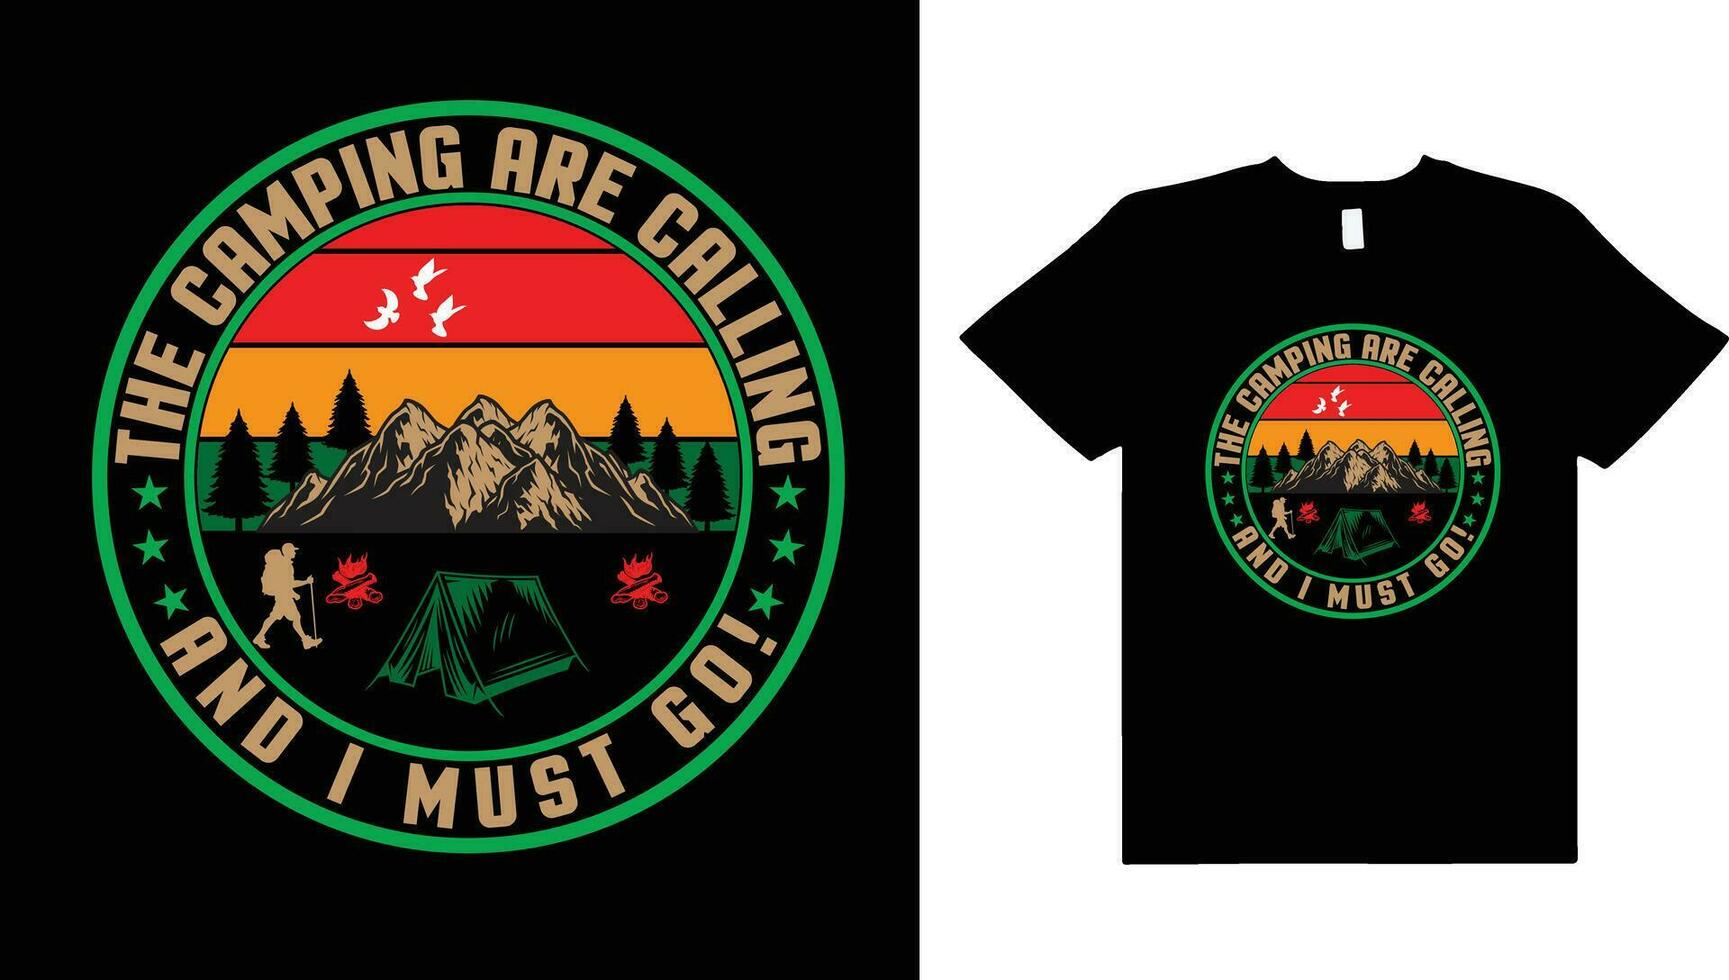 cámping ,aventura naturaleza Clásico camiseta diseño, camping son vocación y yo debe ir,senderismo,montaña,camping camiseta diseño. vector